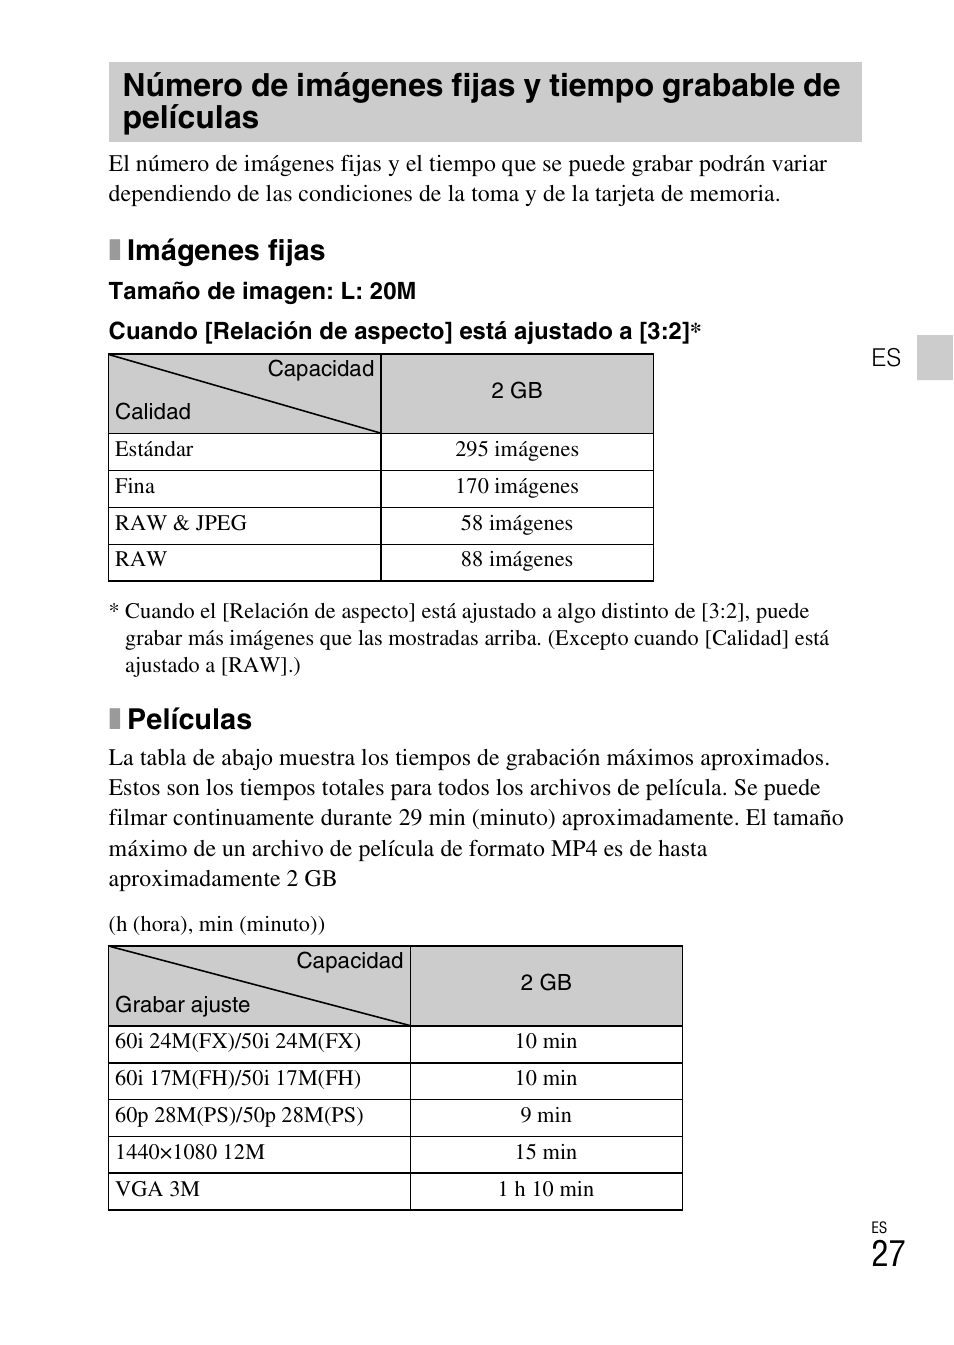 Ximágenes fijas, Xpelículas | Sony DSC-RX100 User Manual | Page 61 / 68